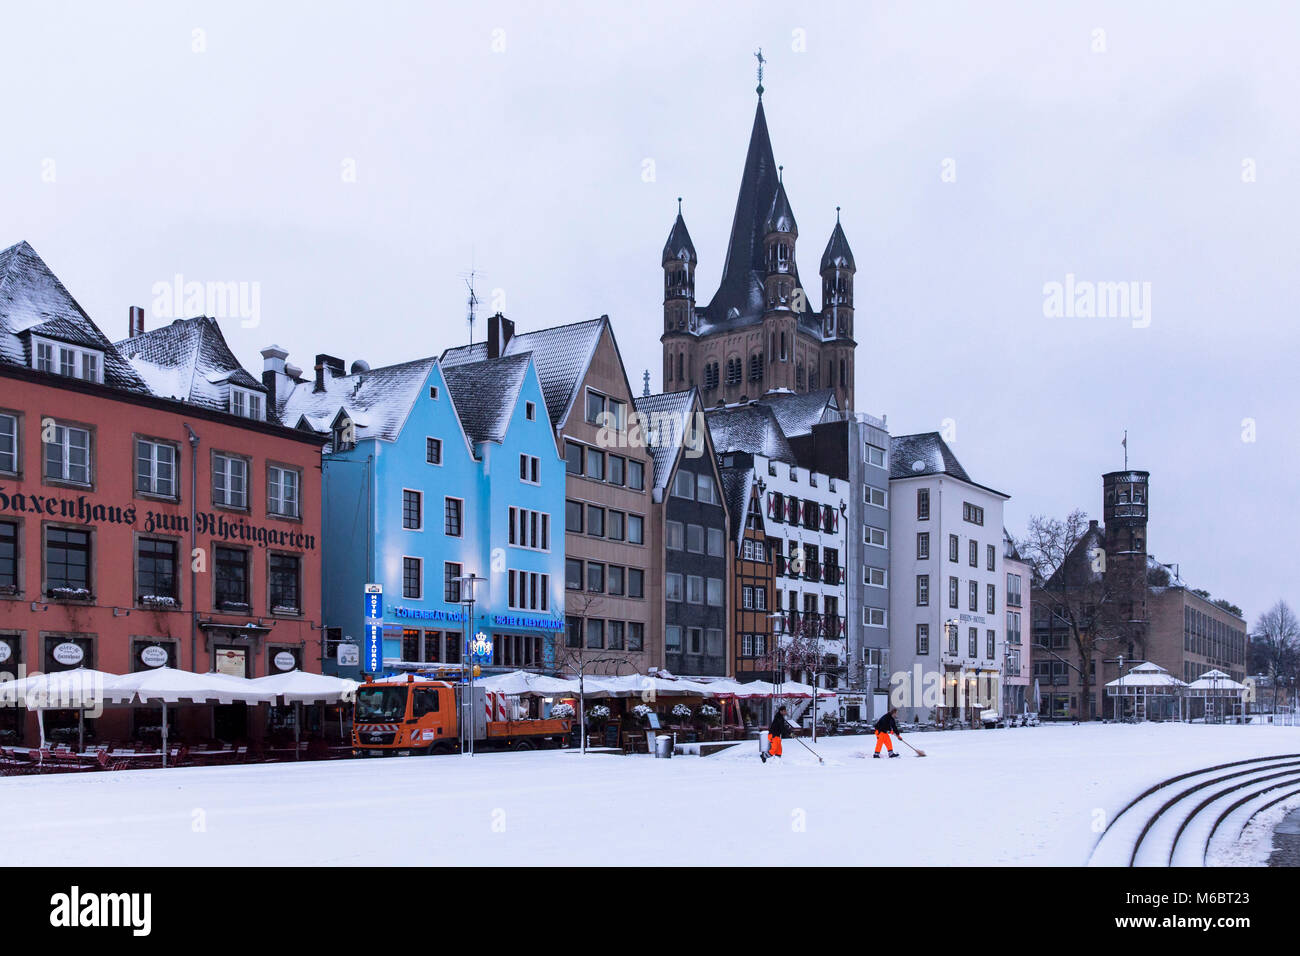 Germania, Colonia, case nella parte vecchia della città alla Frankenwerft, chiesa lordi di San Martin, inverno, la neve Deutschland, Koeln, Haeuser in der Al Foto Stock